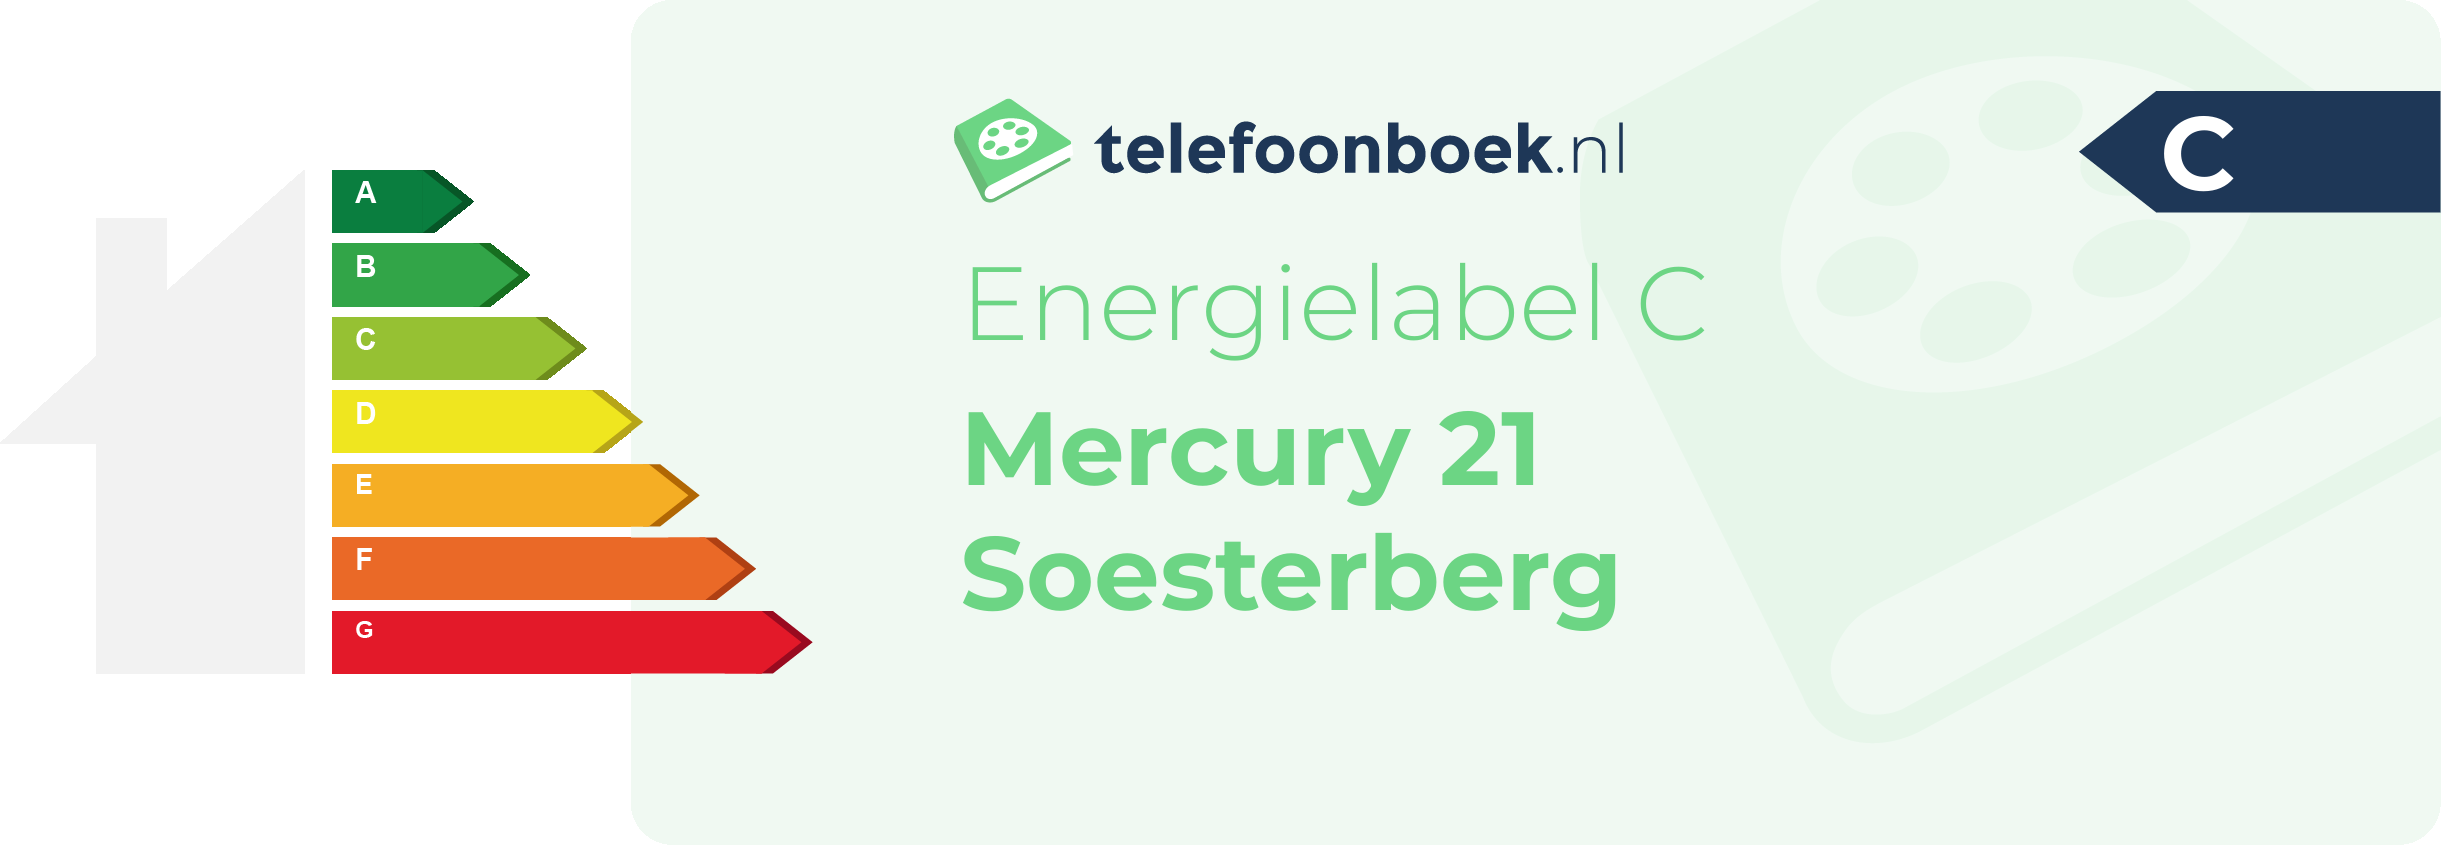 Energielabel Mercury 21 Soesterberg